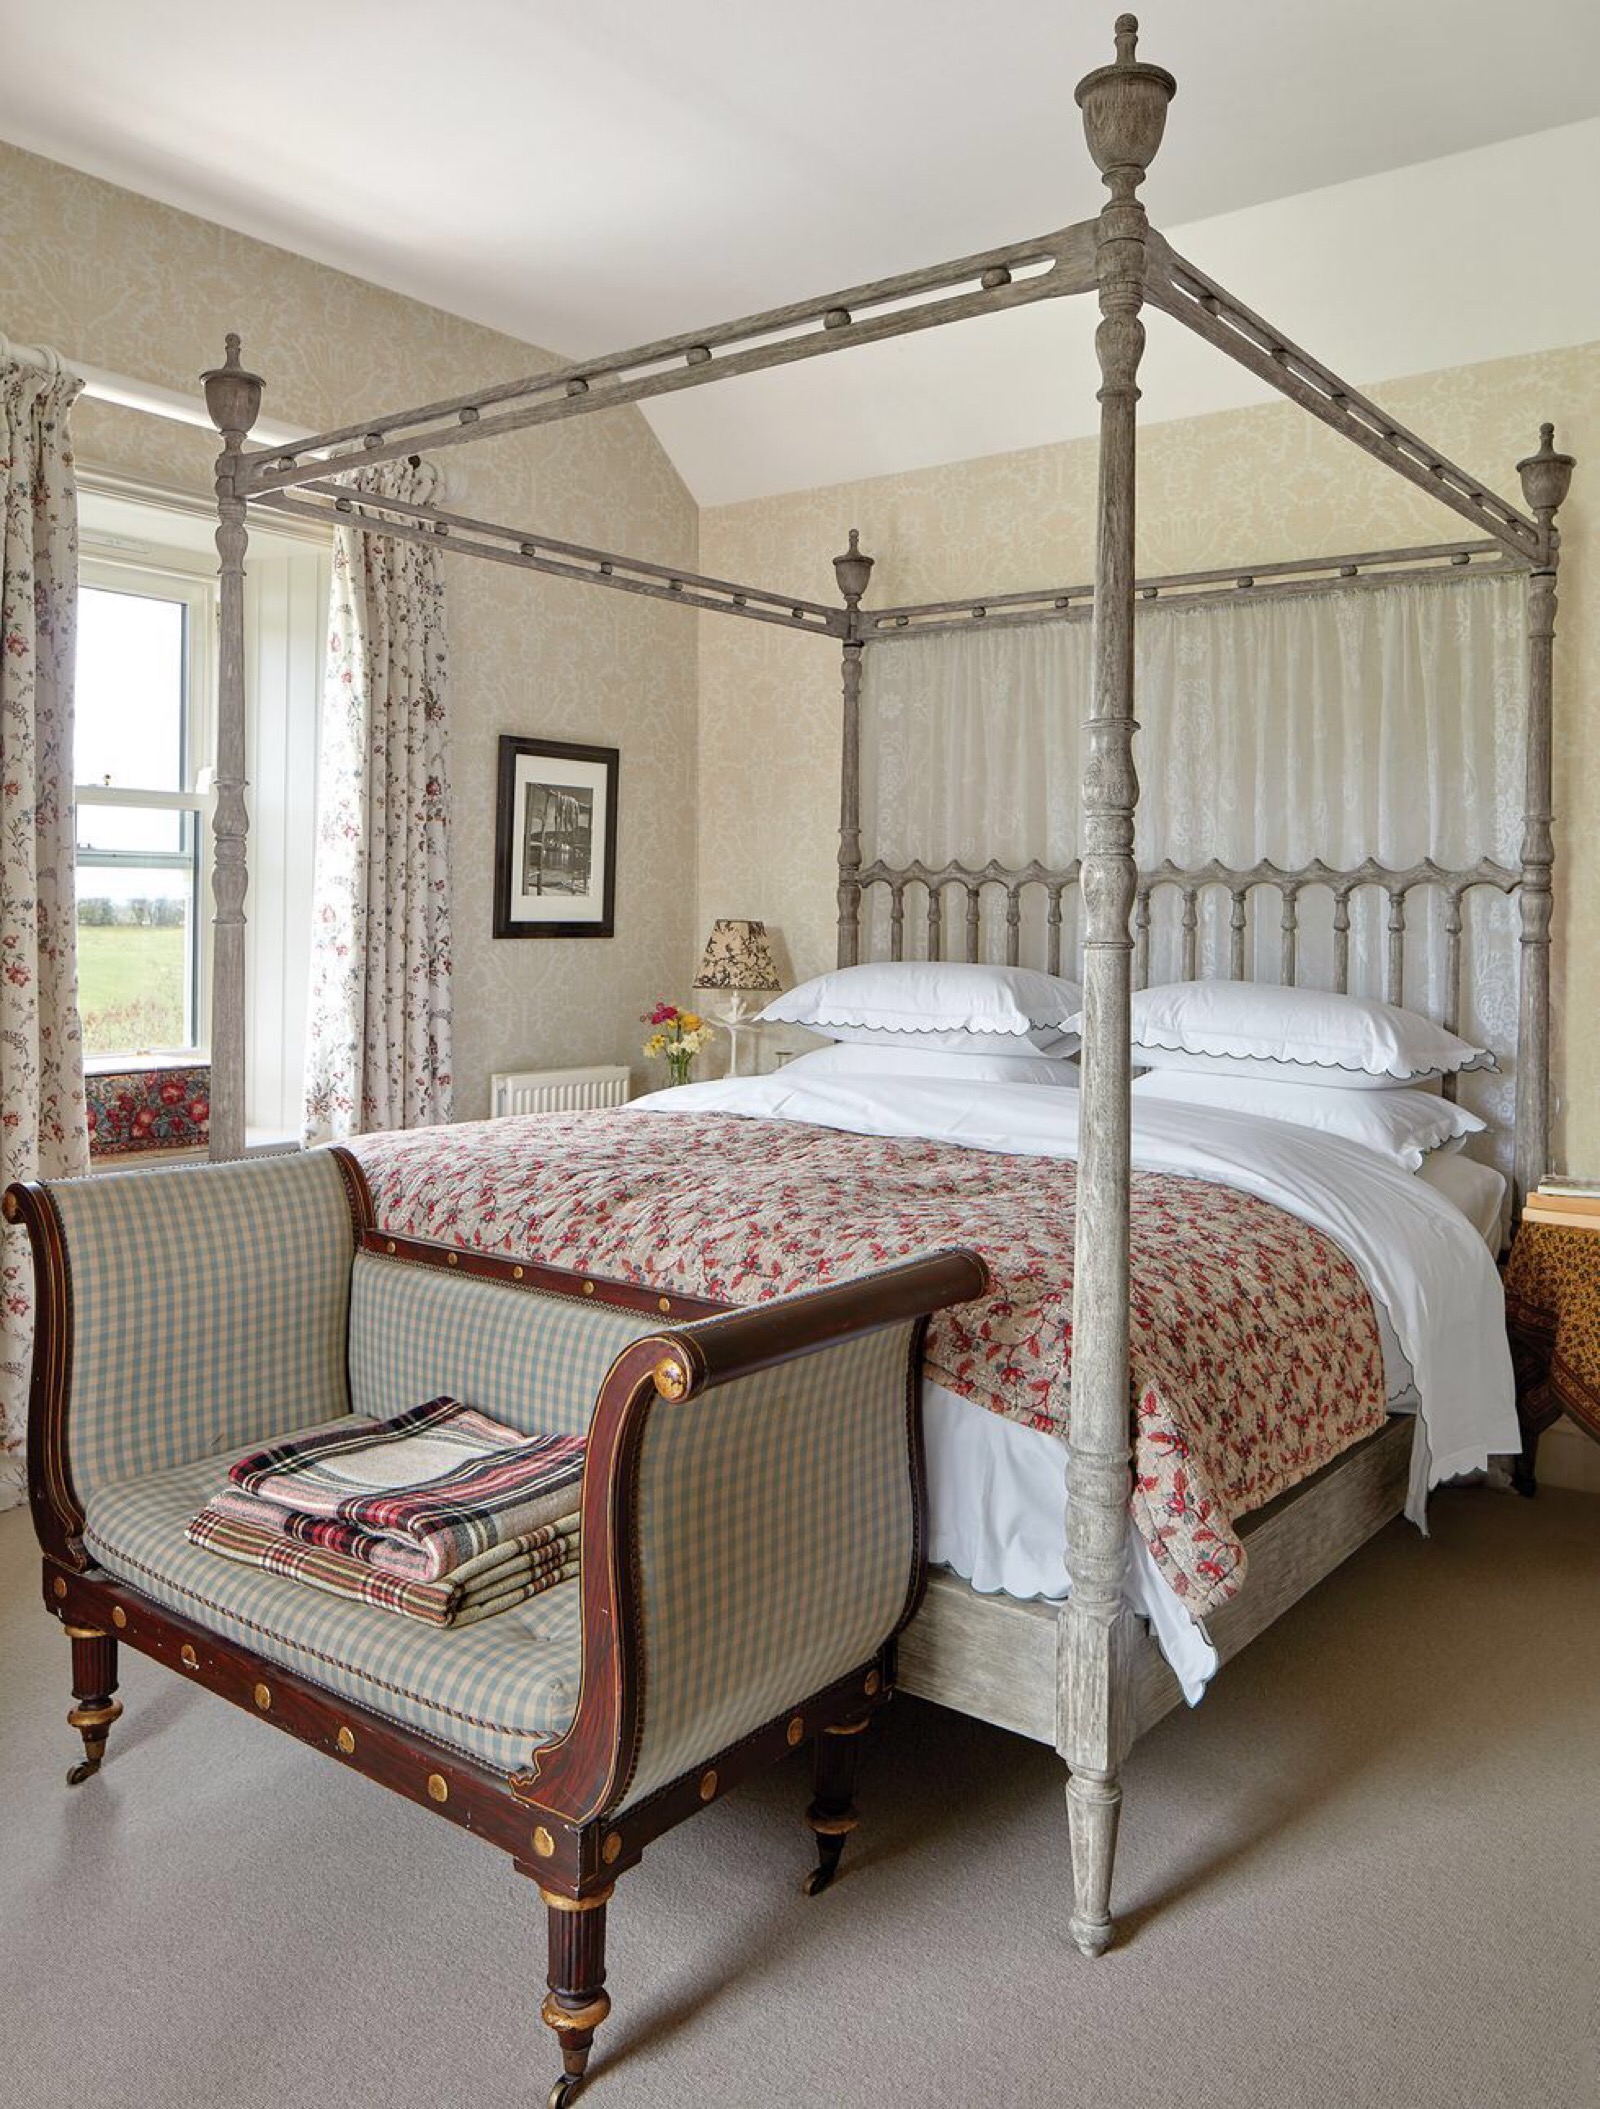 英国室内装饰设计师rita konig布置的英格兰北部度假屋,当代与历史的